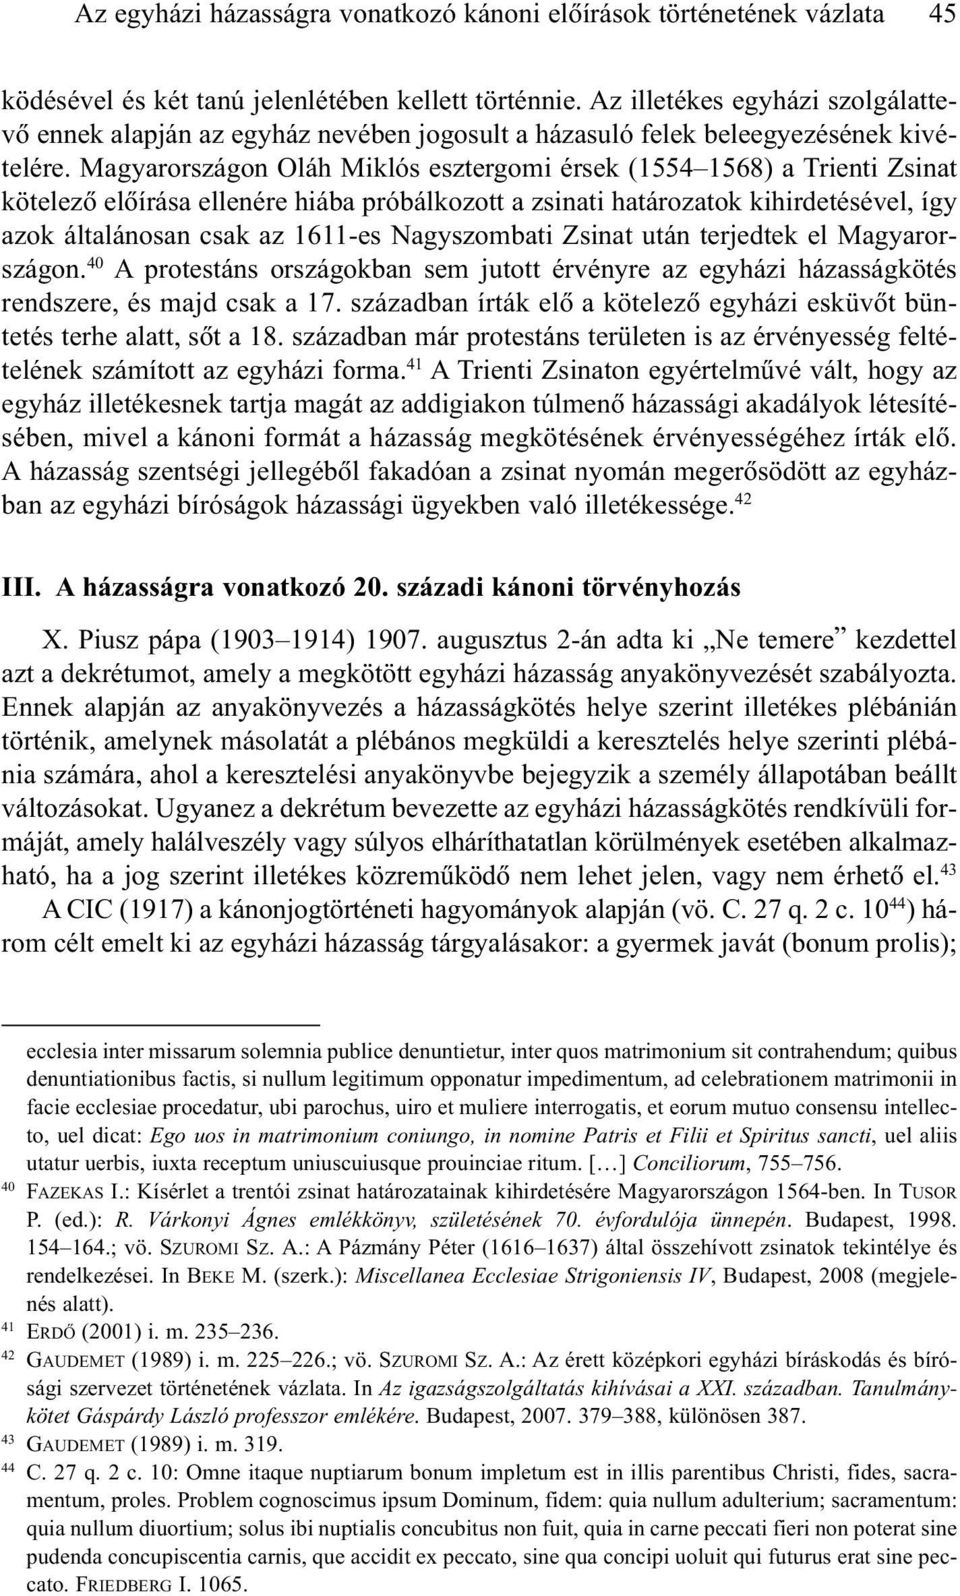 Magyarországon Oláh Miklós esztergomi érsek (1554 1568) a Trienti Zsinat kötelezõ elõírása ellenére hiába próbálkozott a zsinati határozatok kihirdetésével, így azok általánosan csak az 1611-es